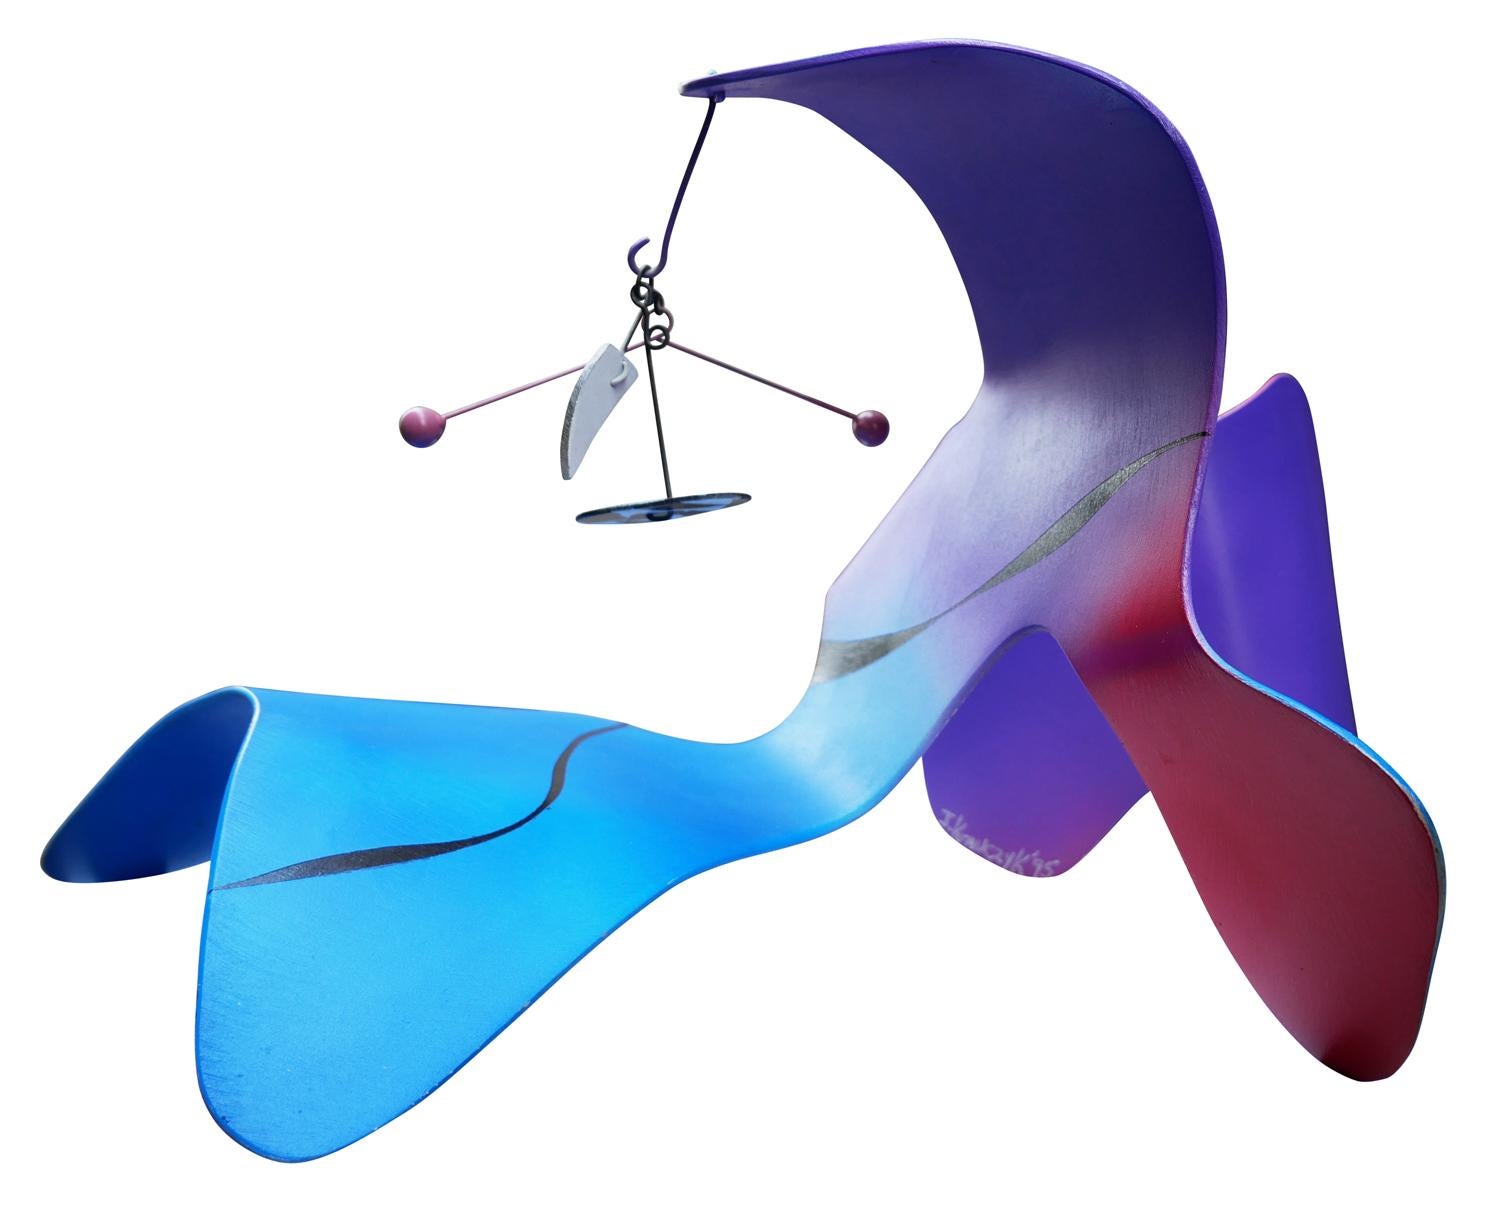 Rote, violette und blaue modernistische abstrakte biomorphe mobile Skulptur – Sculpture von Jon Krawczyk